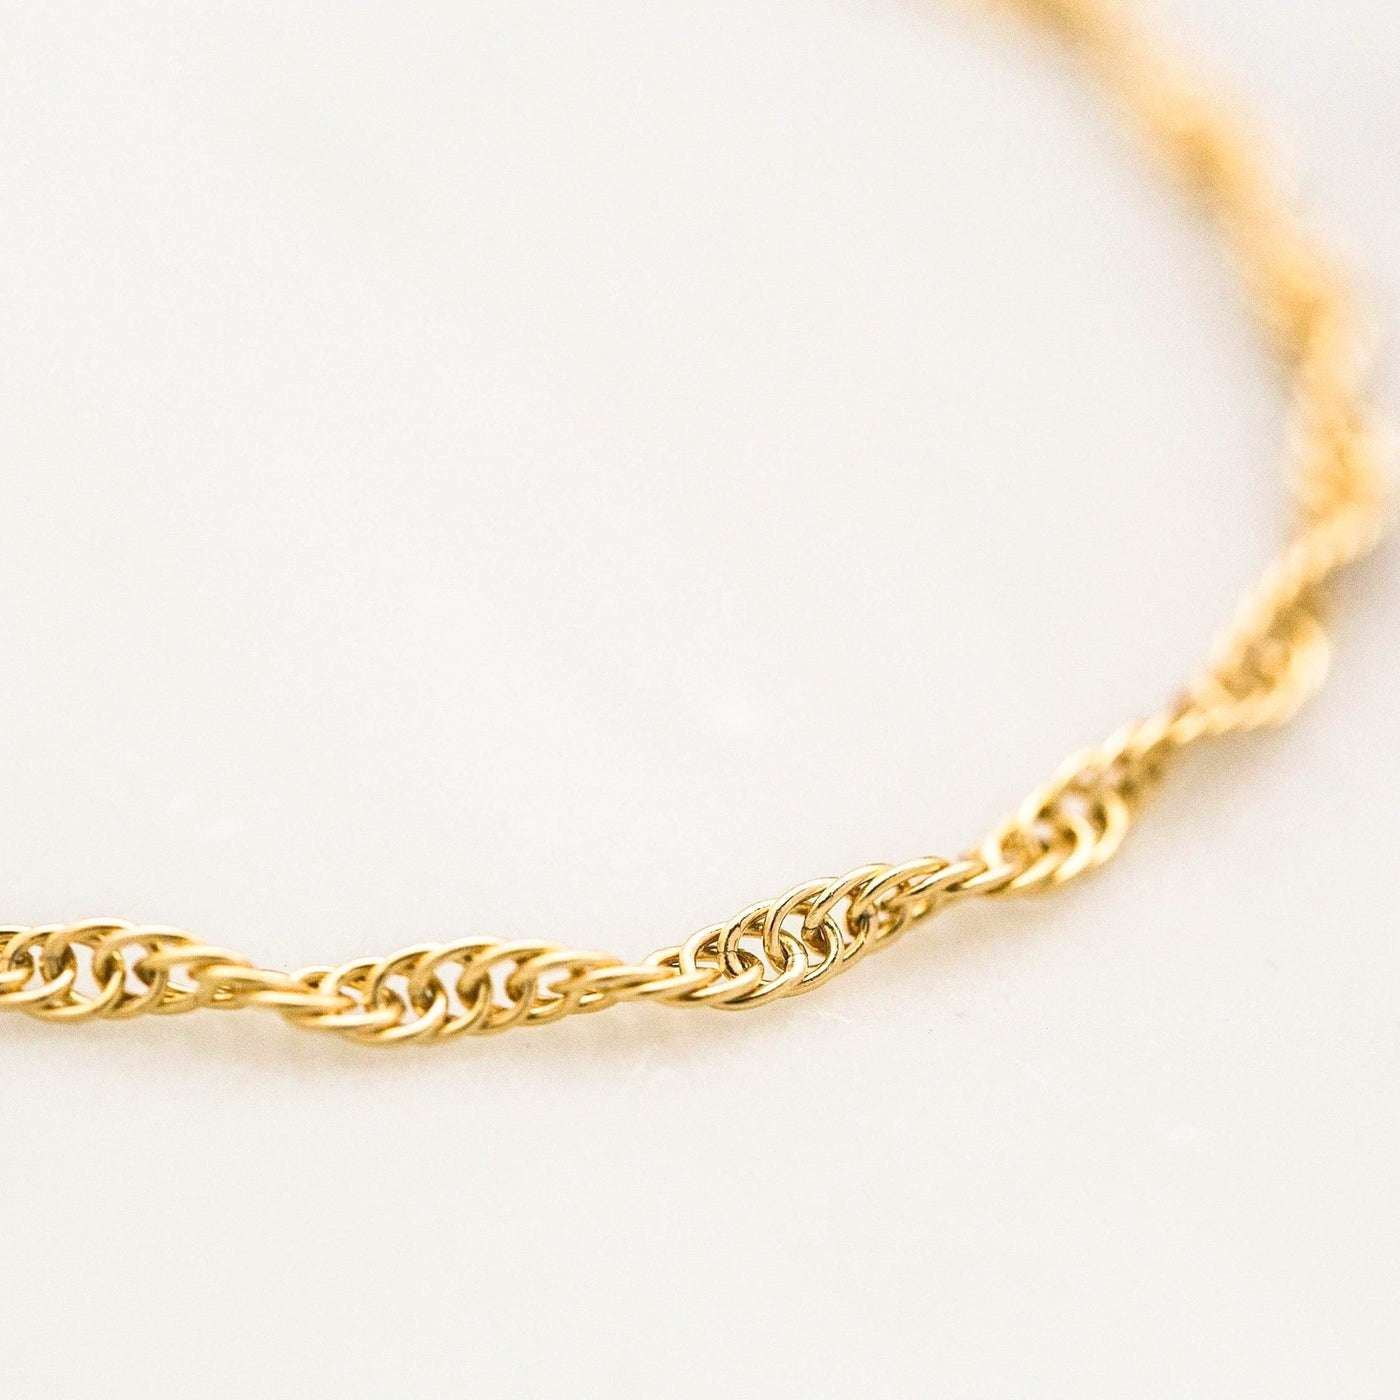 Dainty Rope Bracelet by Simple & Dainty Jewelry